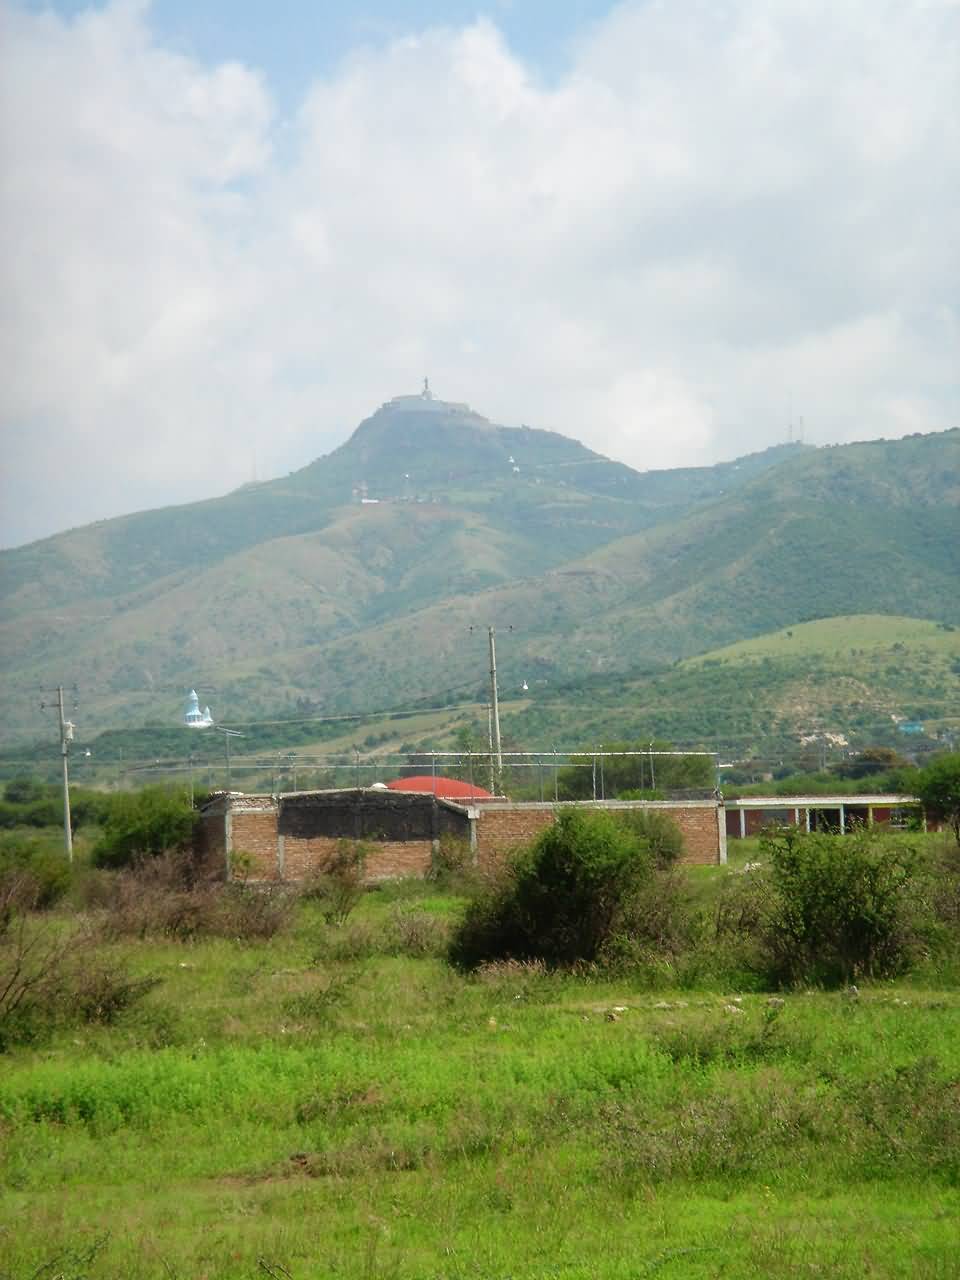 Vista en zoom desde la ciudad de Silao en Guanajuato